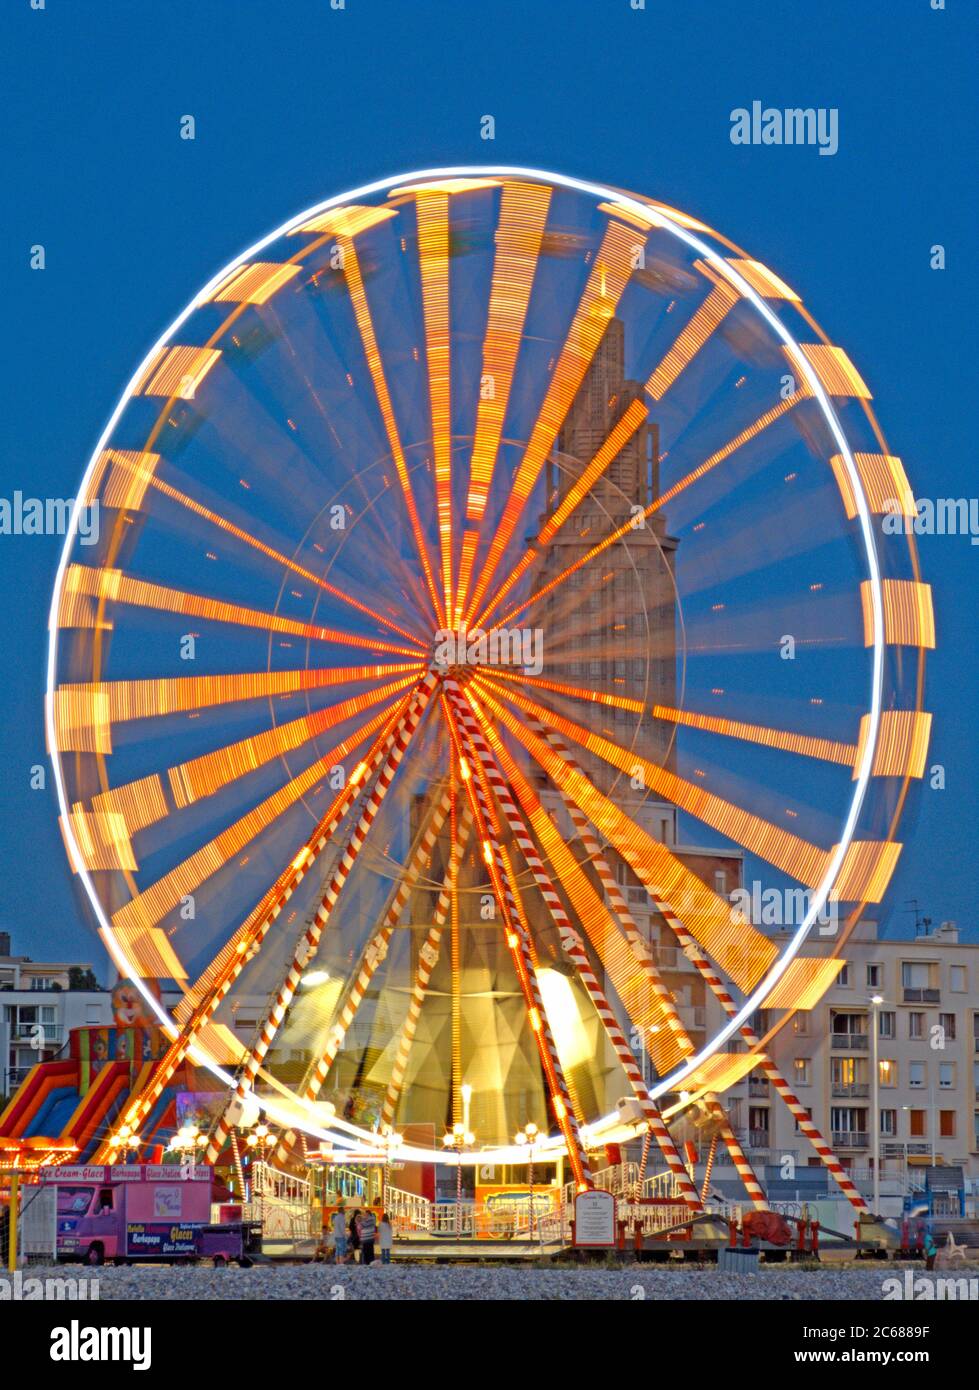 Lunga esposizione della ruota panoramica illuminata, le Havre, Francia Foto Stock